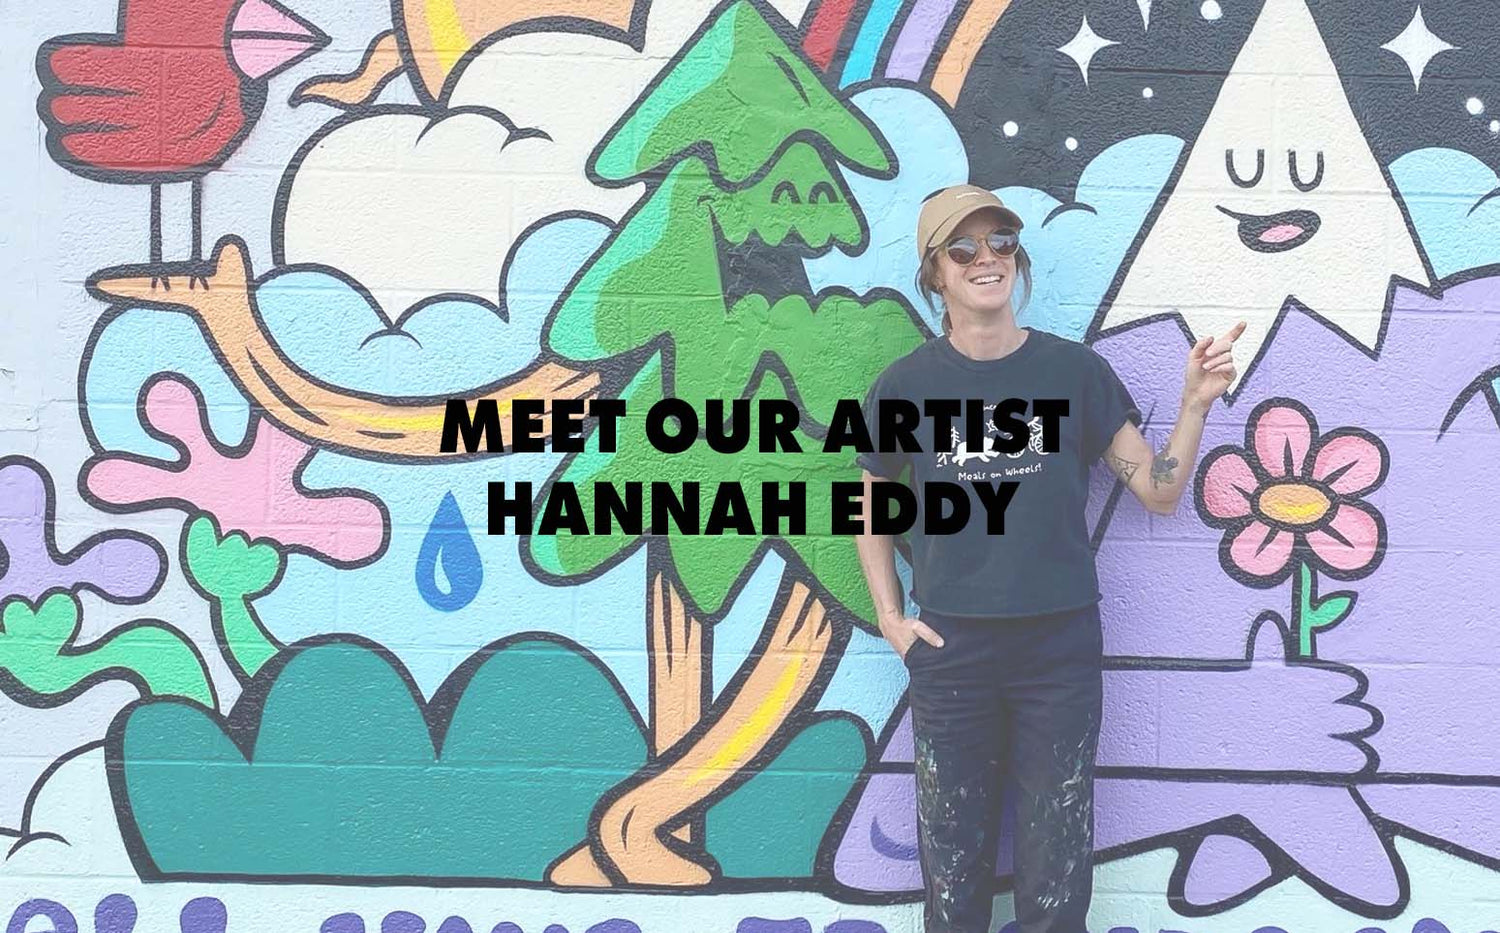 Meet Our Artist: Hannah Eddy